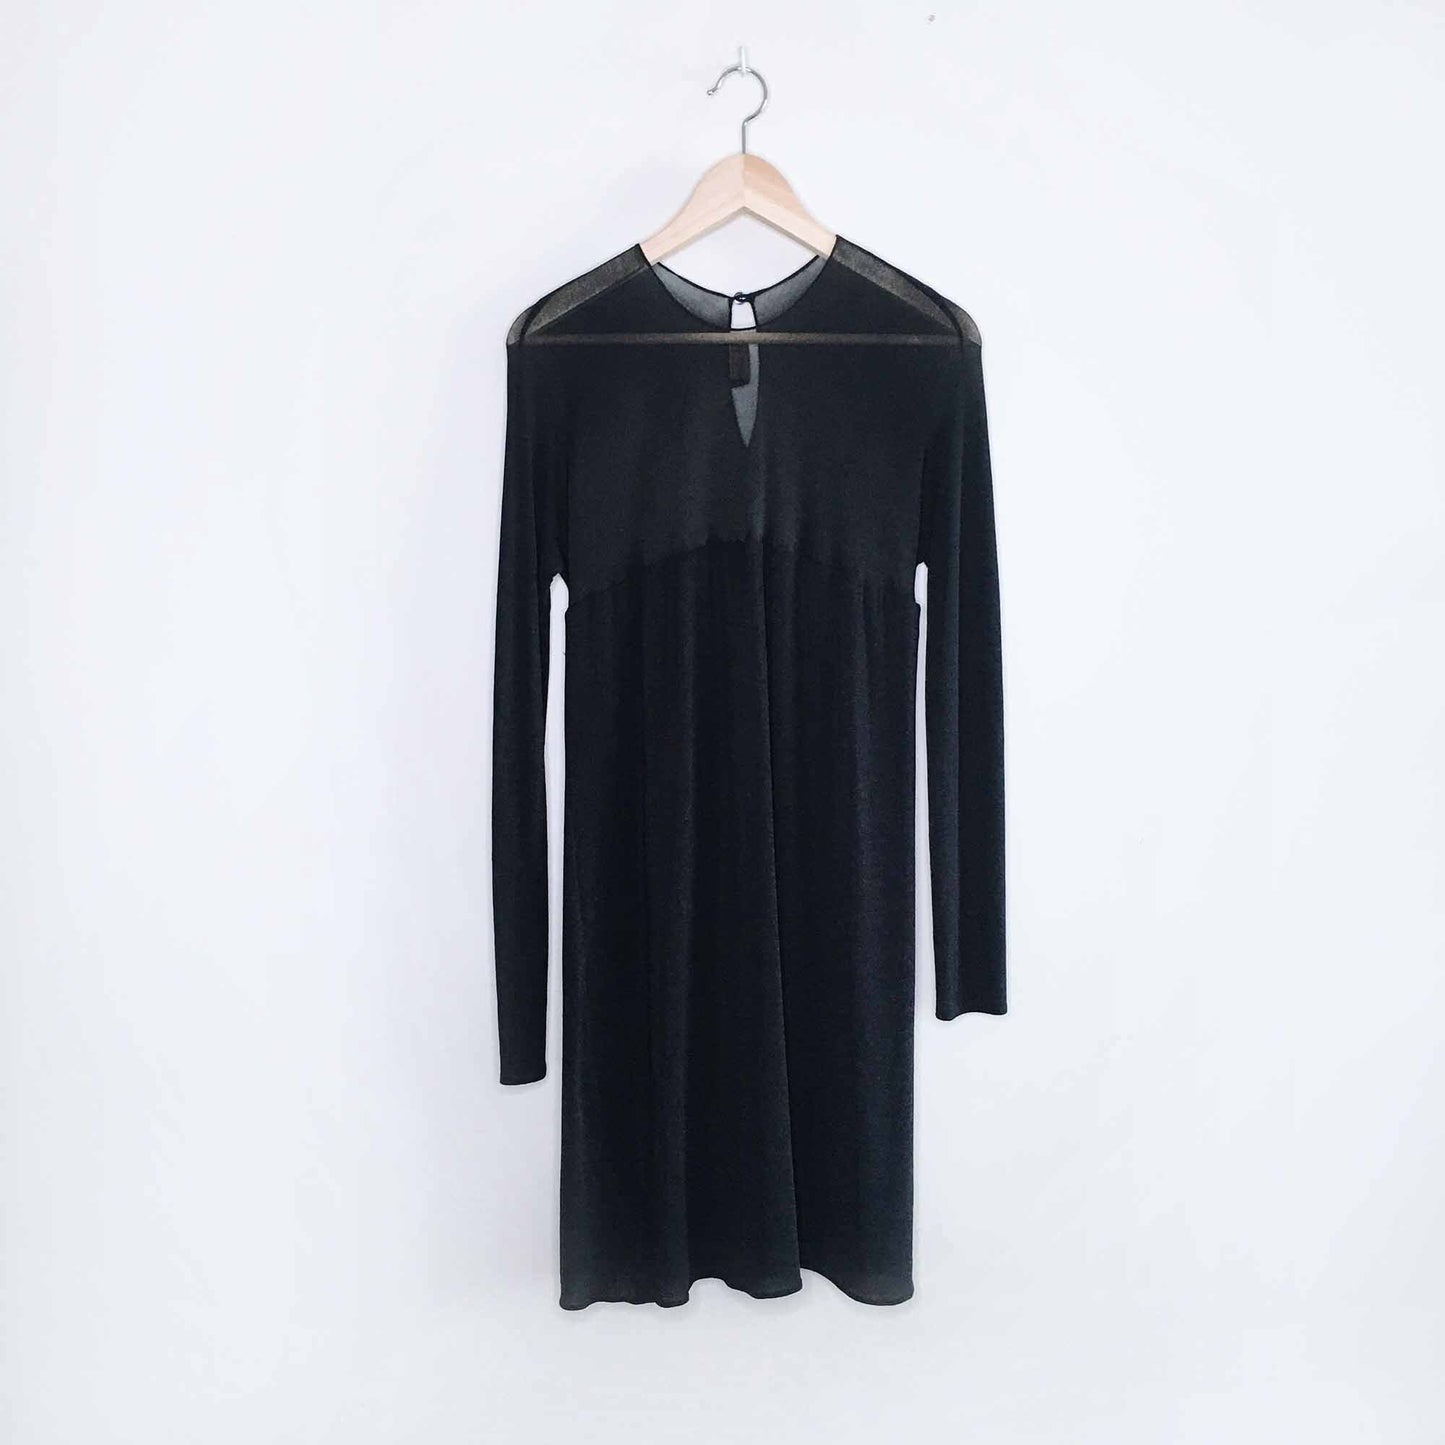 donna karan new york mesh top evening dress - size 10